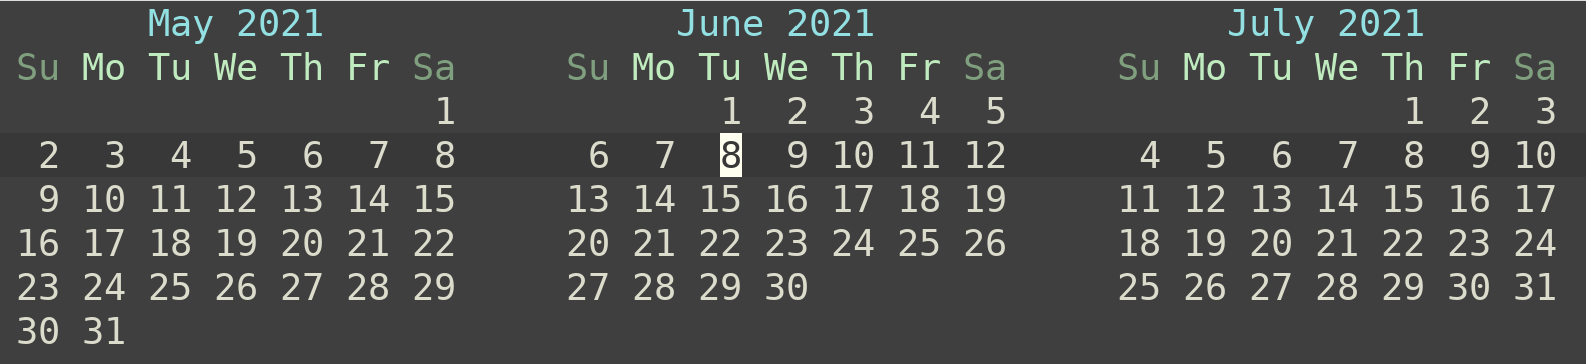 calendar_default.png